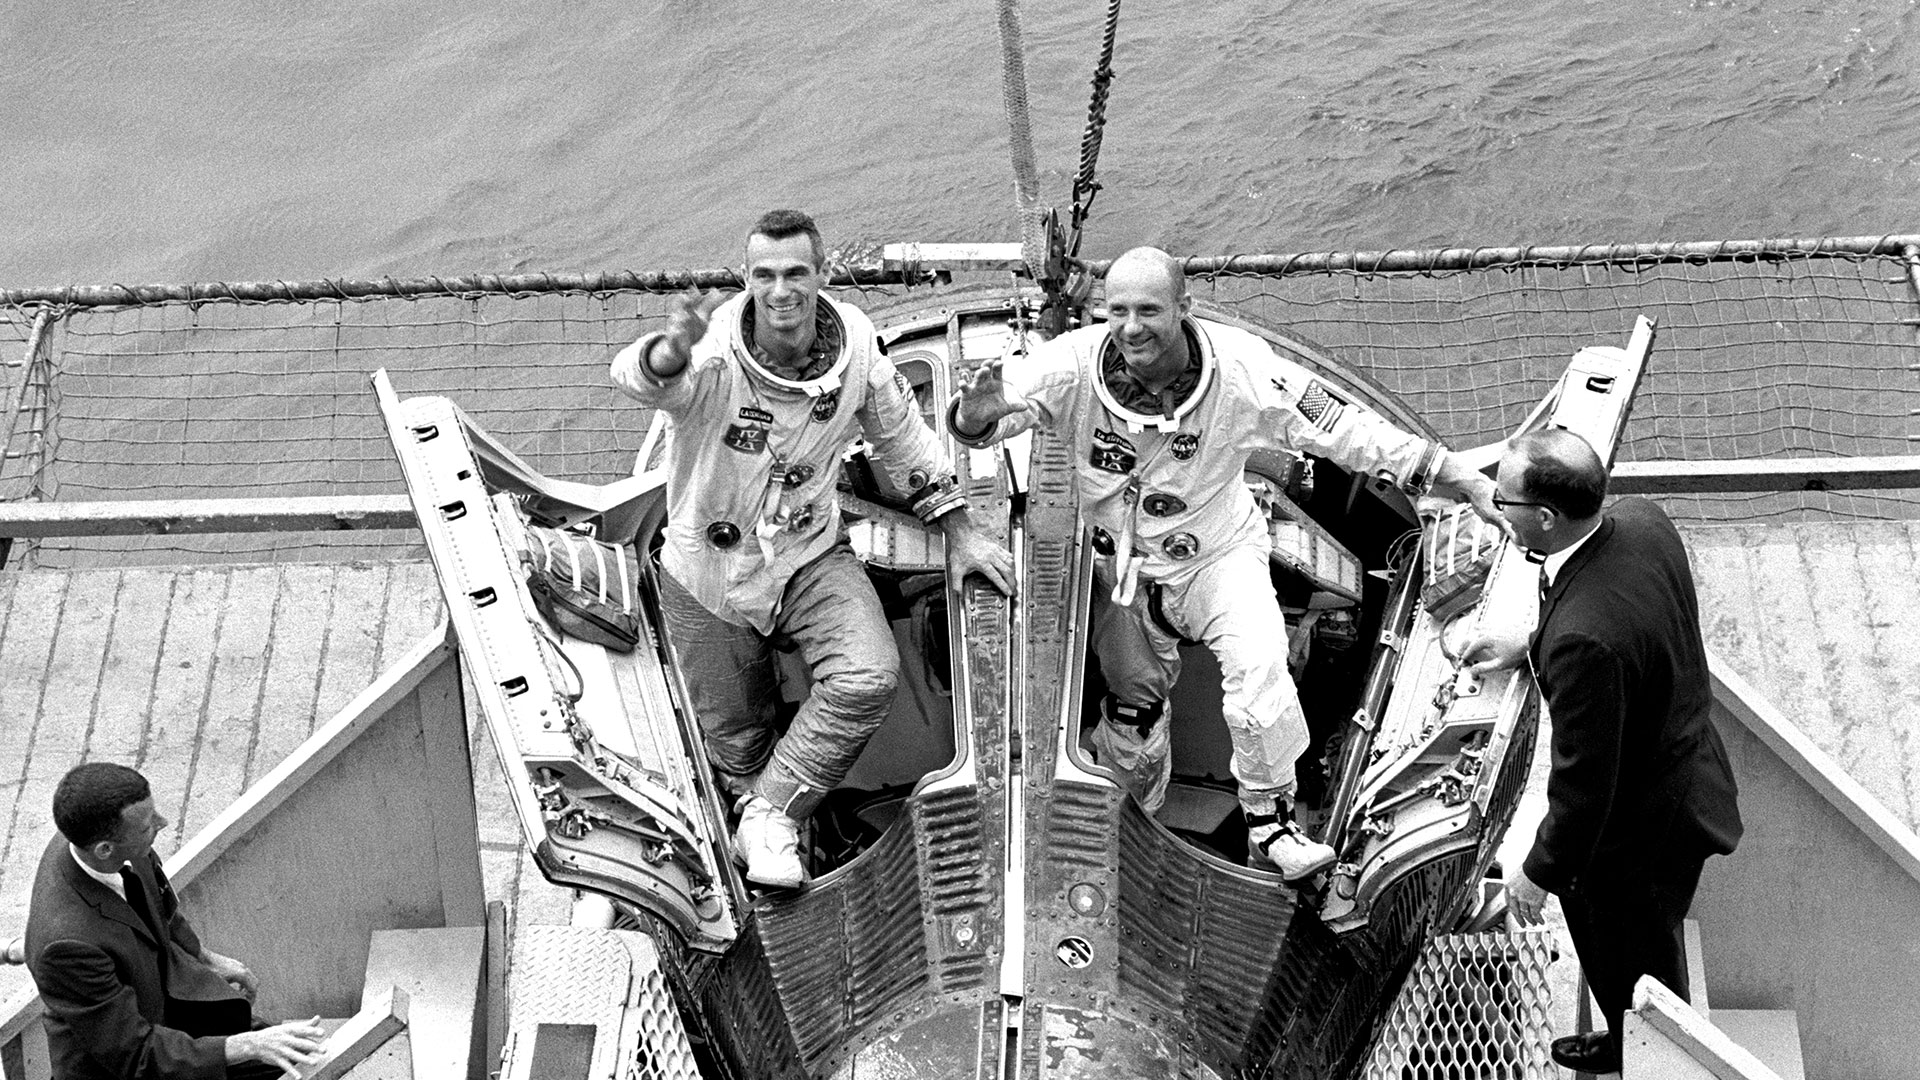 Los astronautas Eugene Cernan y  Thomas Stafford reciben la bienvenida a bordo luego de amarizar en 1966. Fue la primera misión espacial de Cernan (Photo by Smith Collection/Gado/Getty Images)